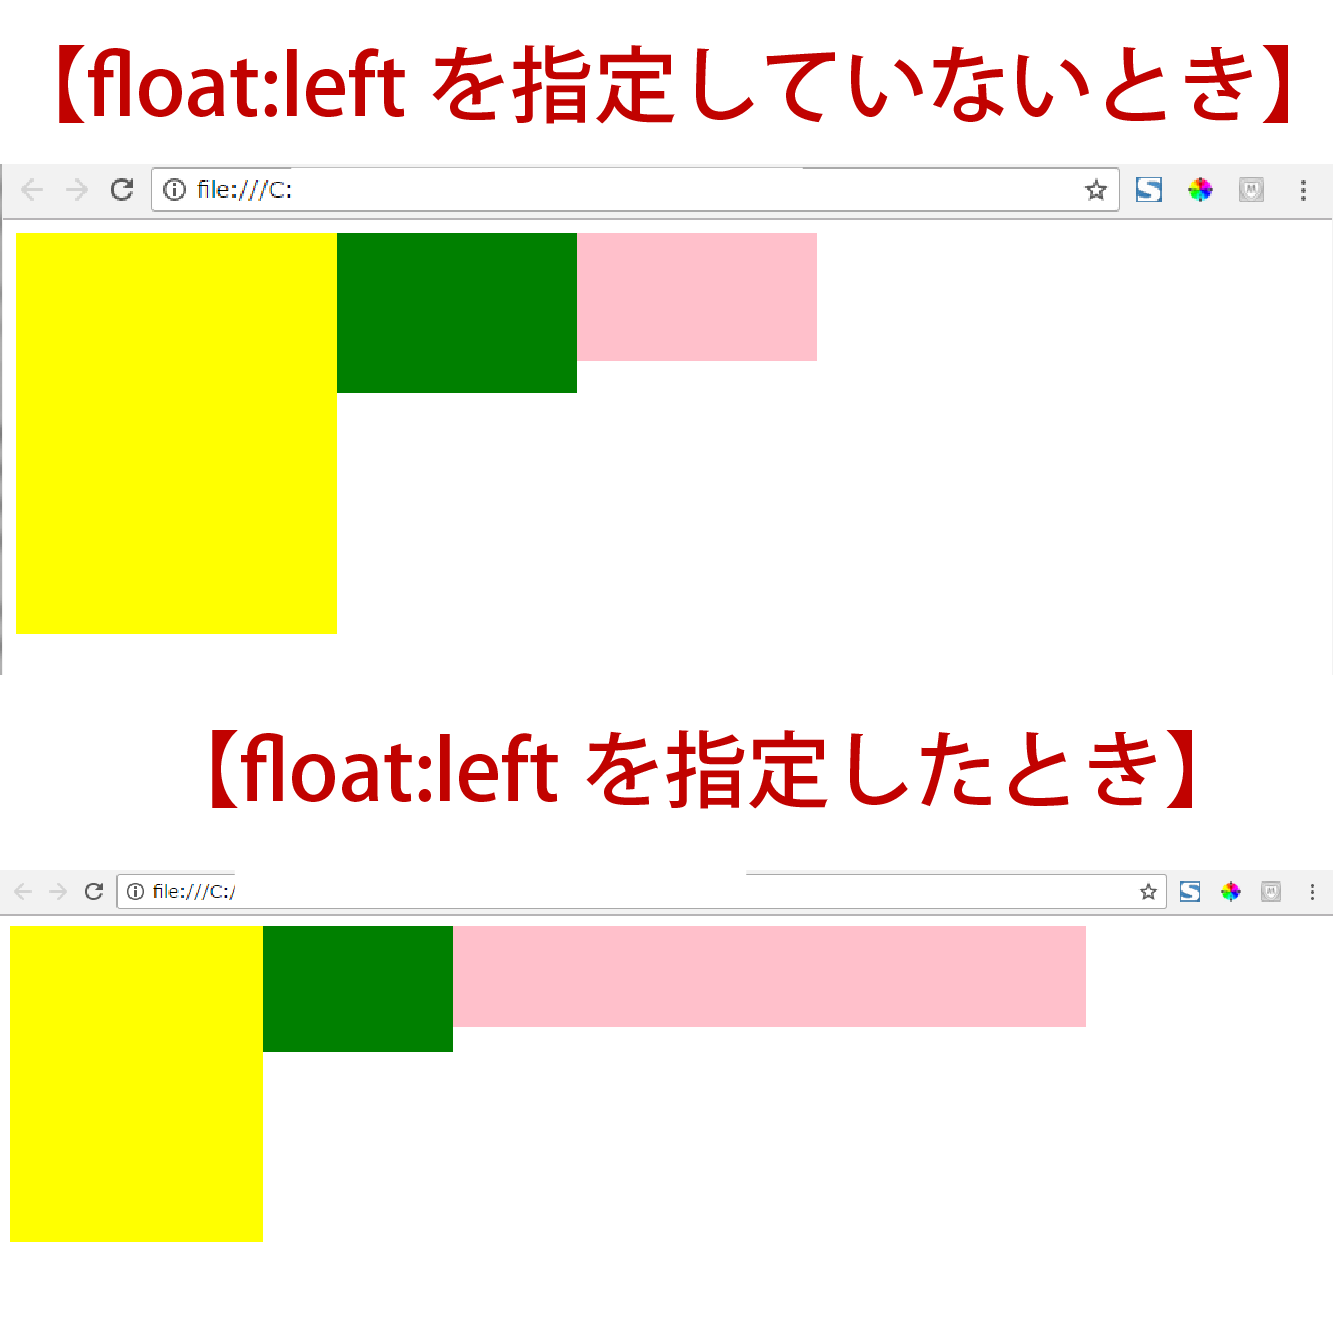 float:leftを指定している時と指定していない時の比較